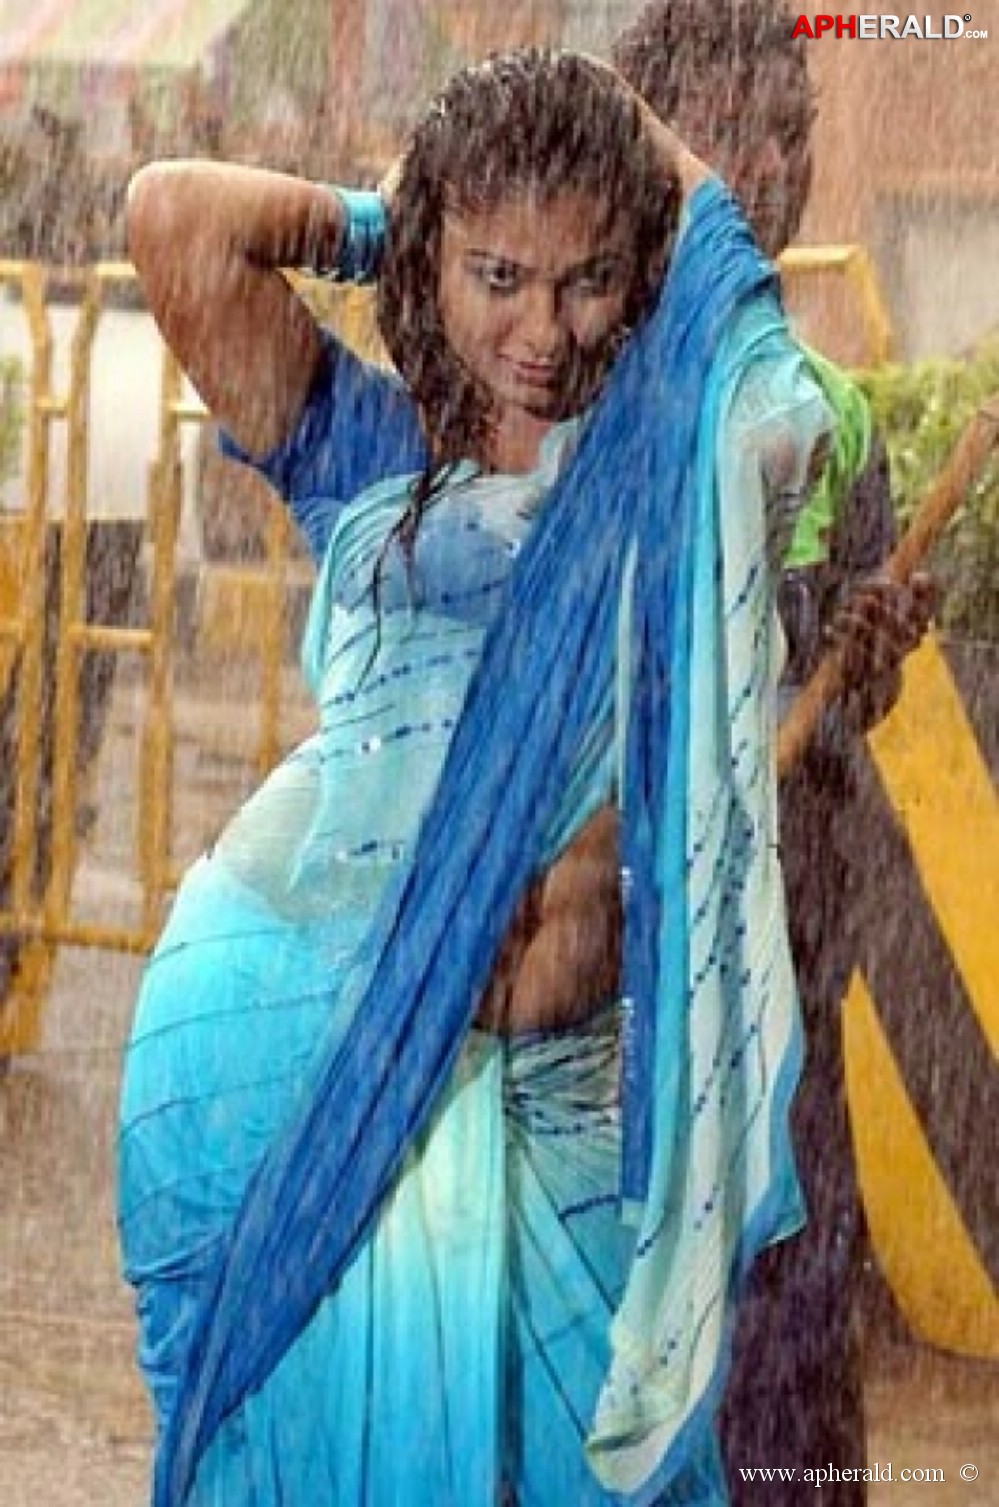 Actress Wet Saree Pics